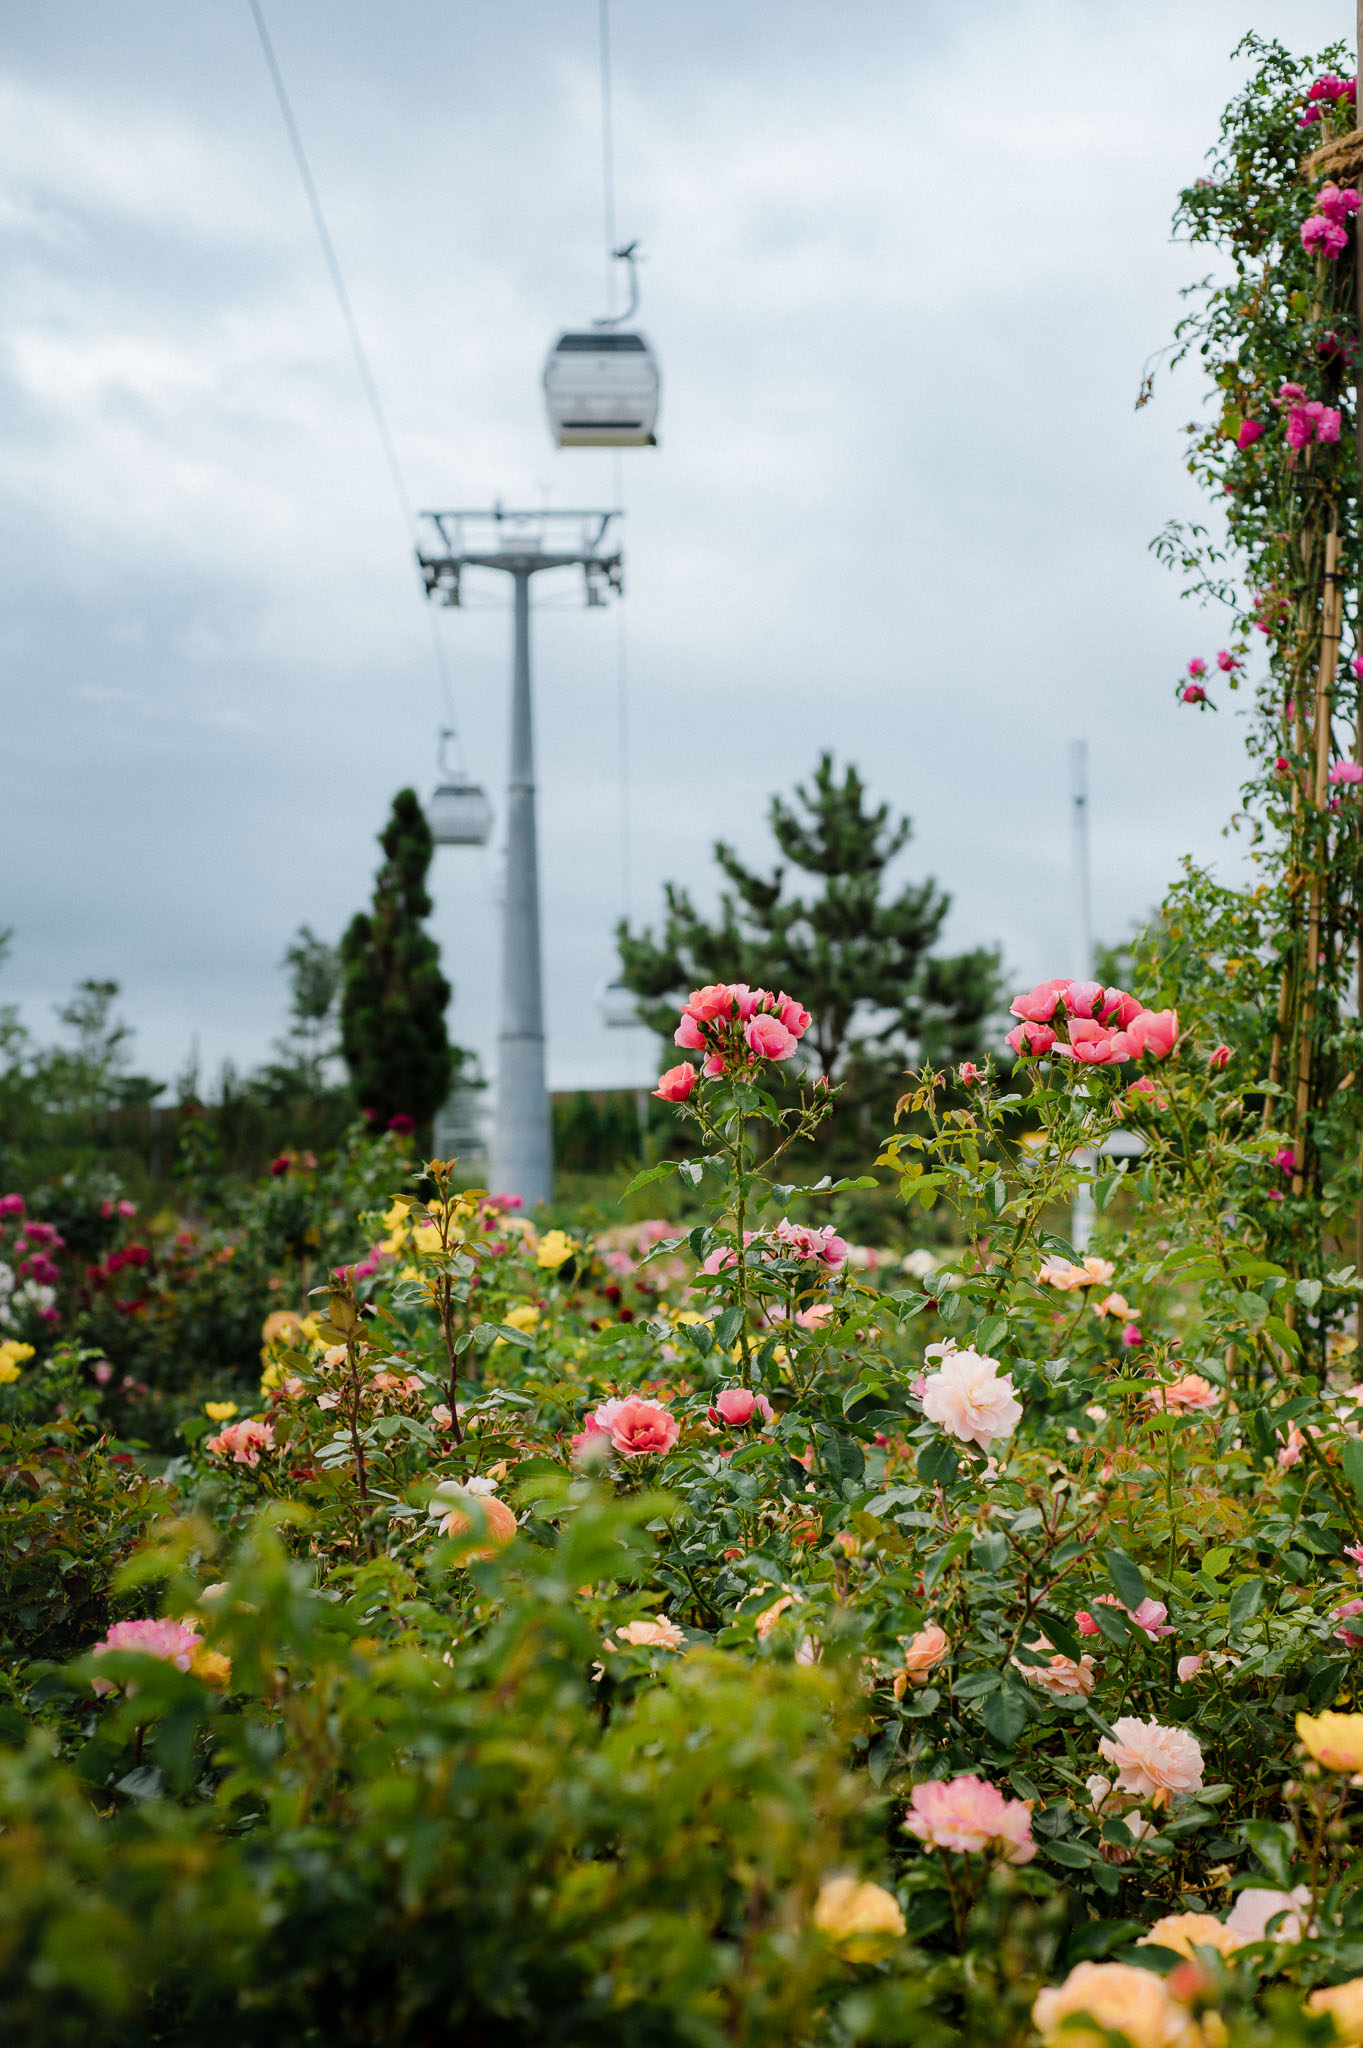 Sie ist der Hingucker auf der Floriade: Gondel über dem Rosengarten